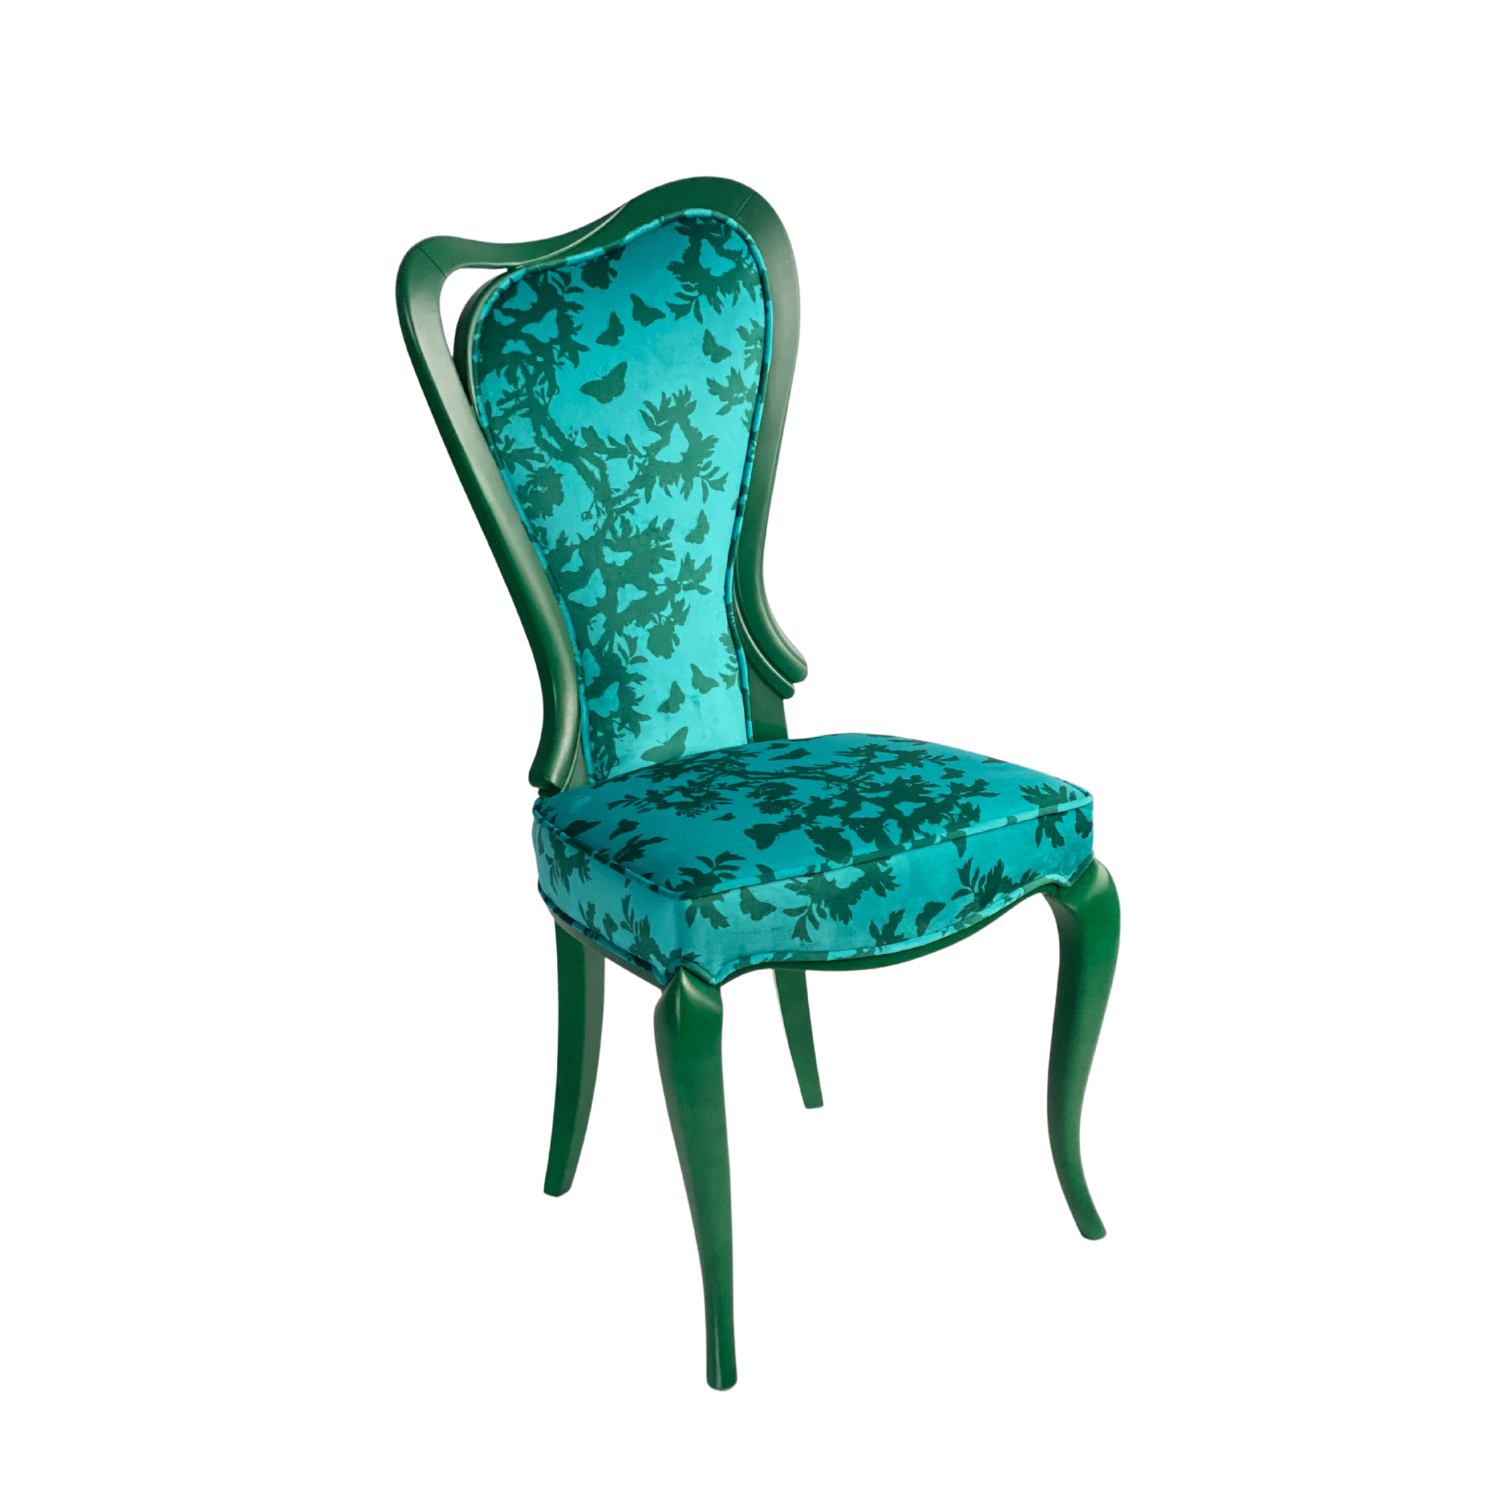 krzesło zielone welurowe,krzesło zielone butelkowe,krzesło zielone drewniane,krzesło zielone tapicerowane,krzesło aksamitne zielone,krzesło zielony aksamit,krzesła zielone aksamitne,krzesło adel zielone,krzesło ażurowe zielone,zielone krzesła do jadalni,zielone krzesła do salonu,krzesło biurowe zielone,krzesło barowe zielone,zielone krzesło brw,krzesło bankietowe zielone